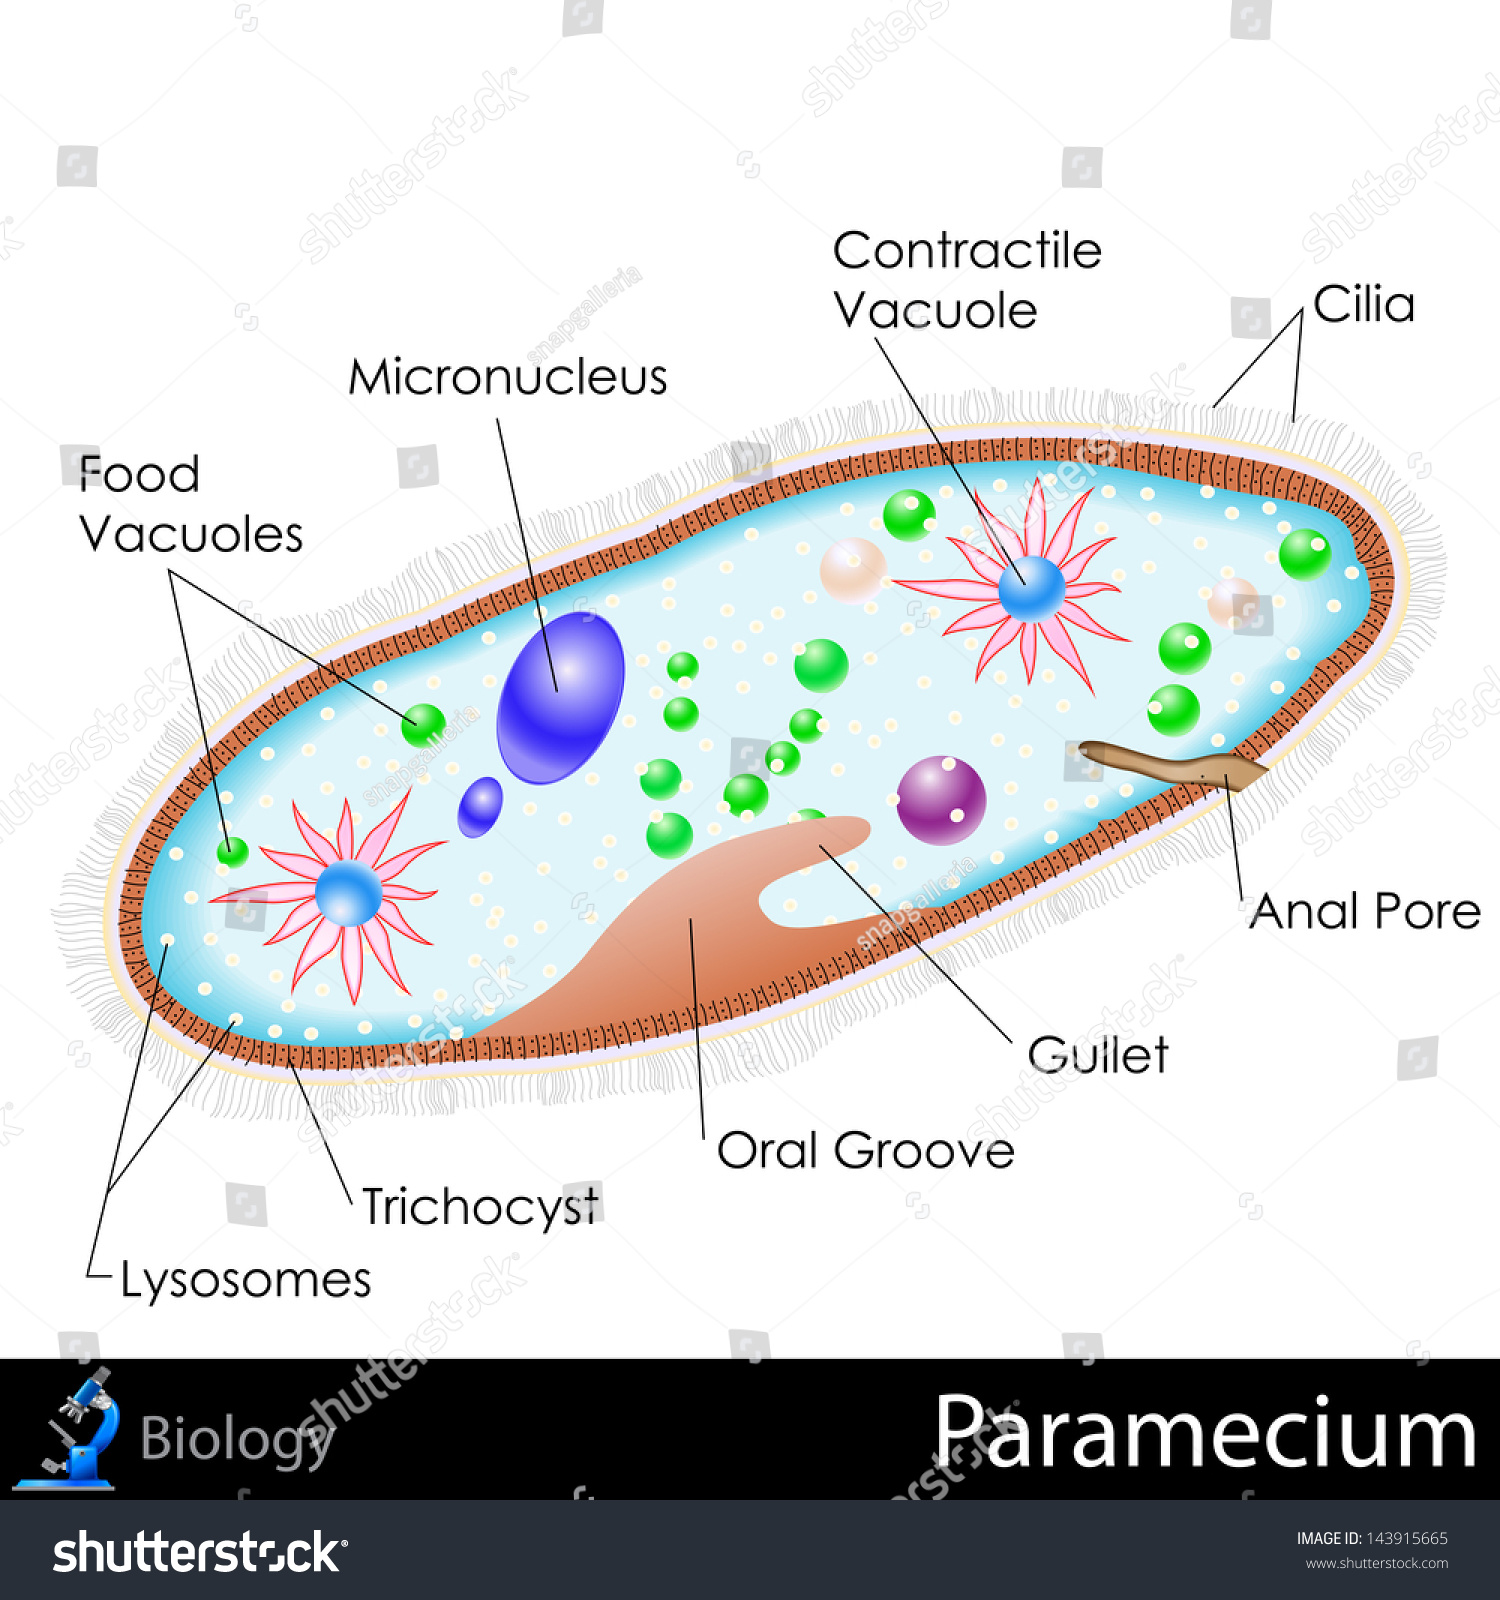 Paramecium Labelled Diagram Ks3